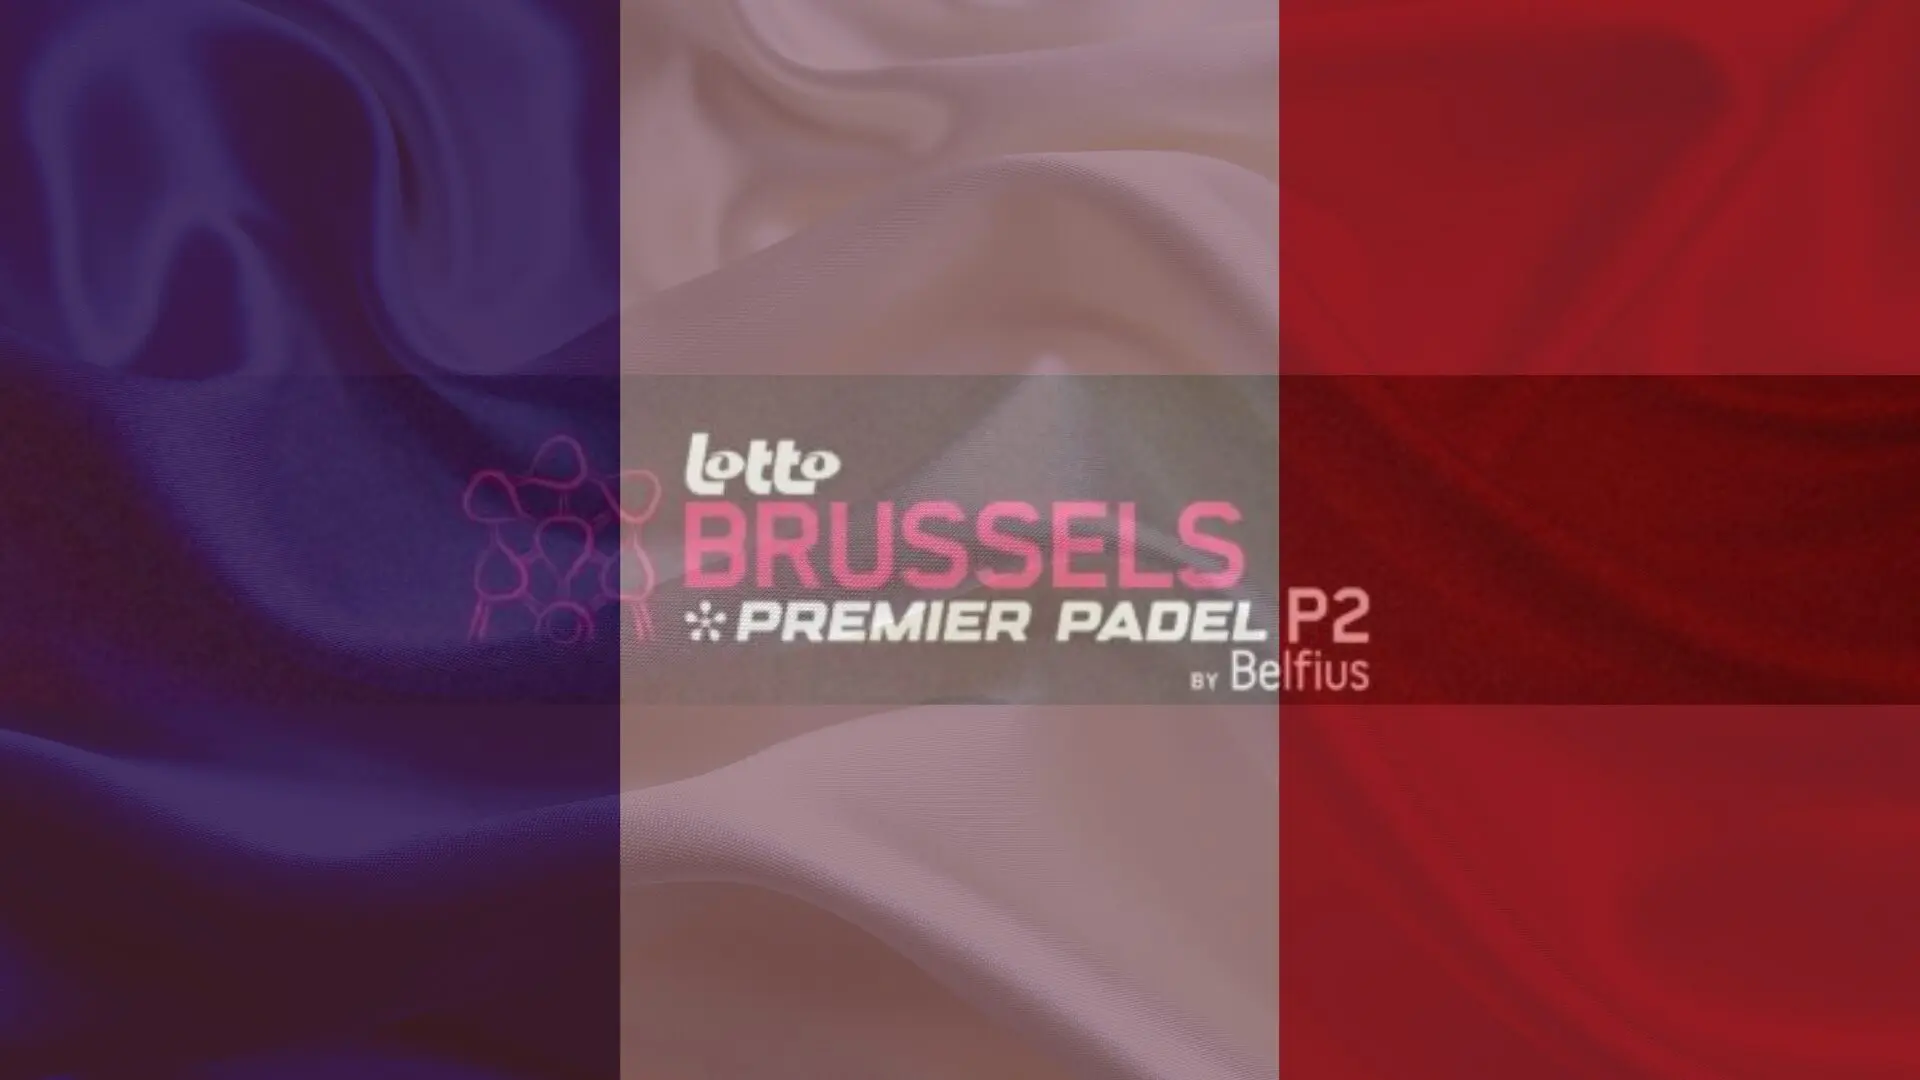 ¿Quiénes son los franceses que participarán en el Premier Padel ¿Bruselas P2?